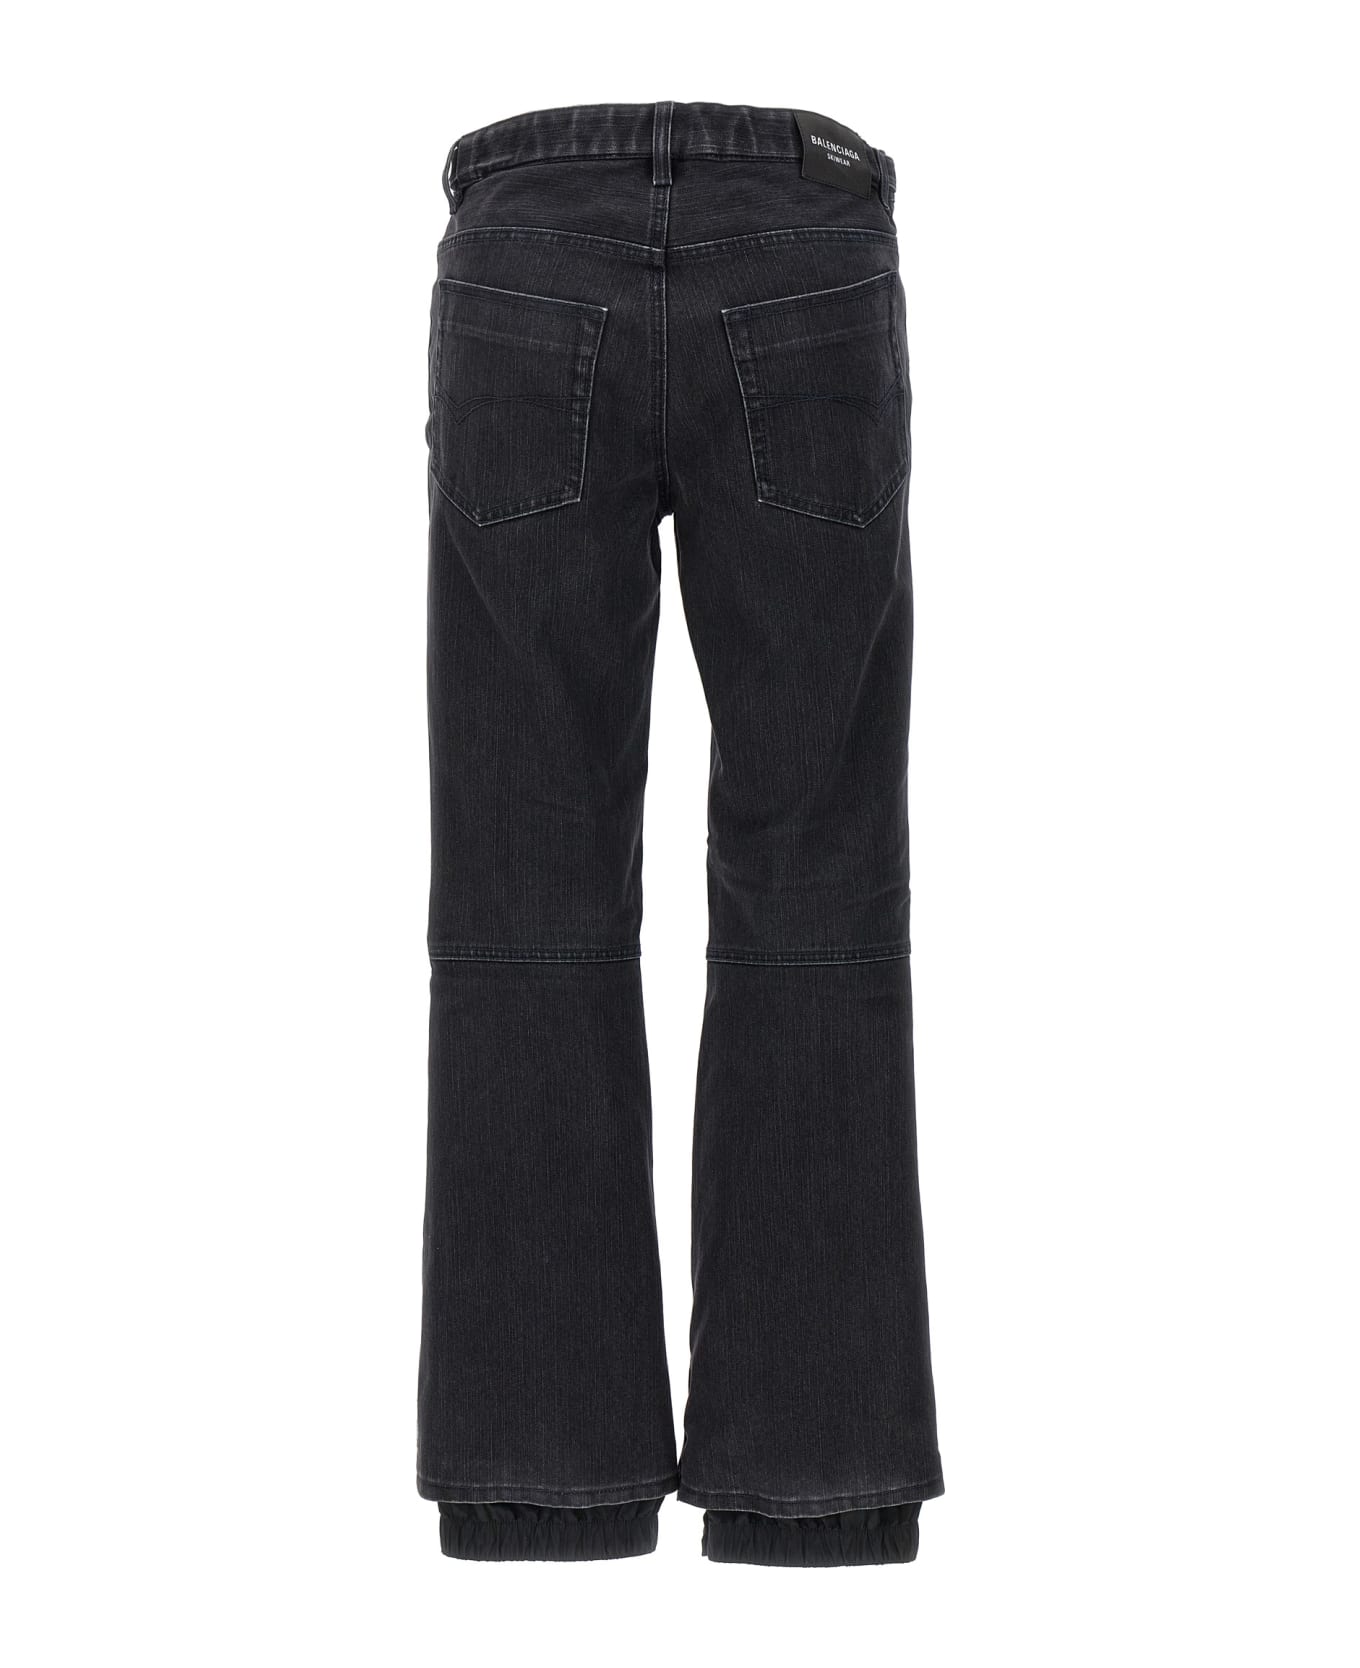 Balenciaga 'ski' Jeans - Black   デニム